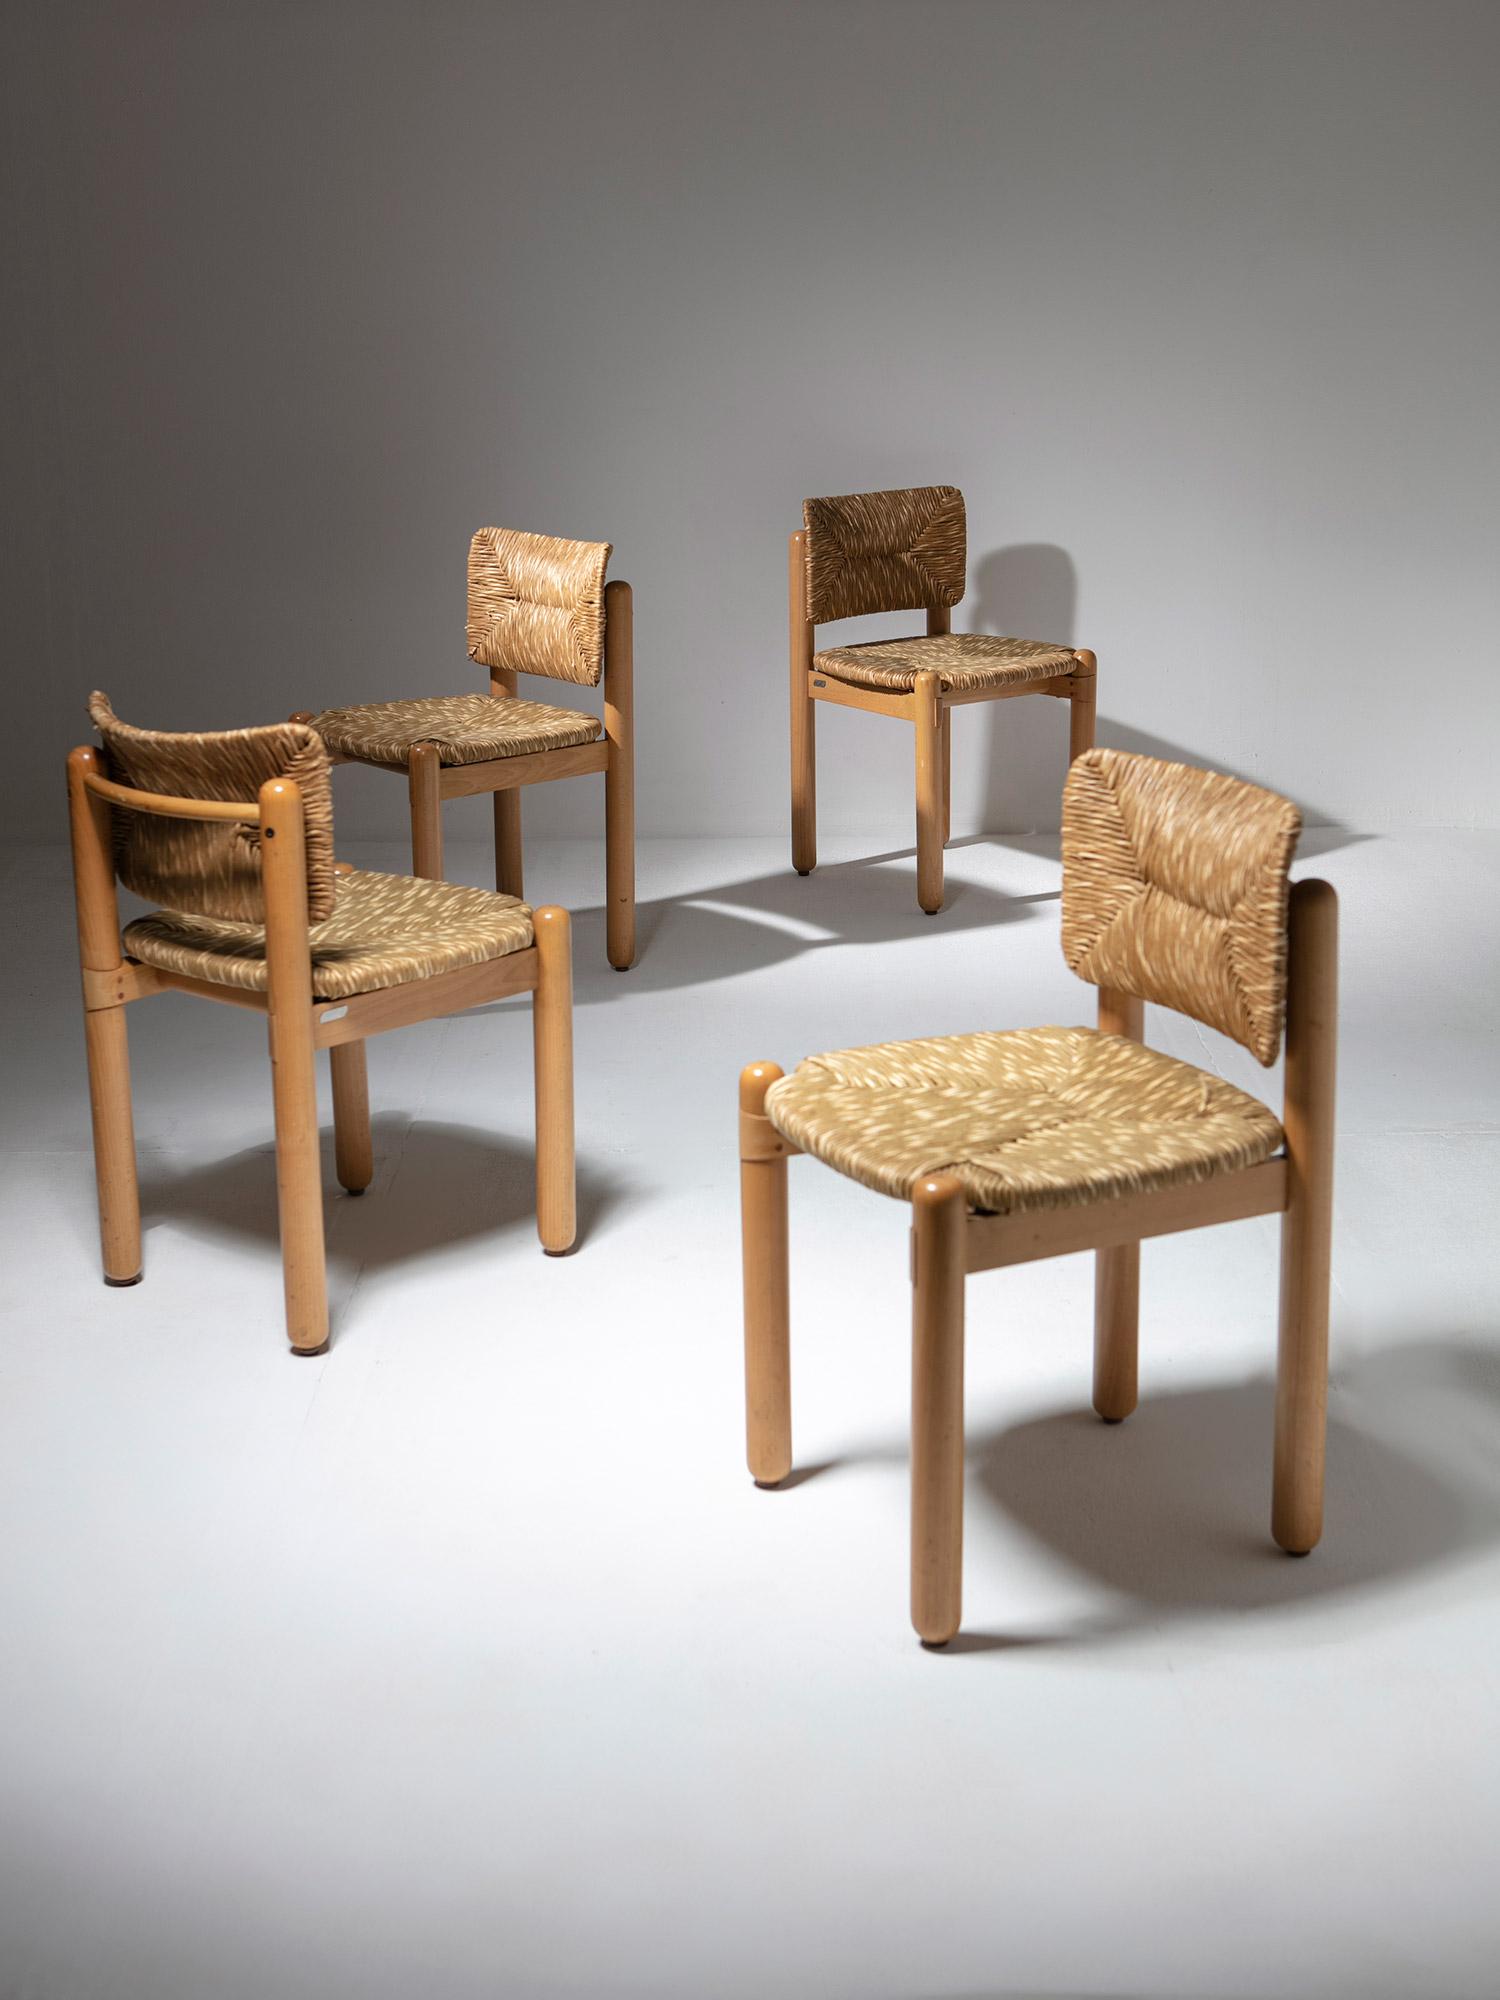 Ensemble de quatre chaises Baba par Assostudio pour Pozzi & Verga.
Cadre en bois de hêtre massif et coussins en fibres naturelles.